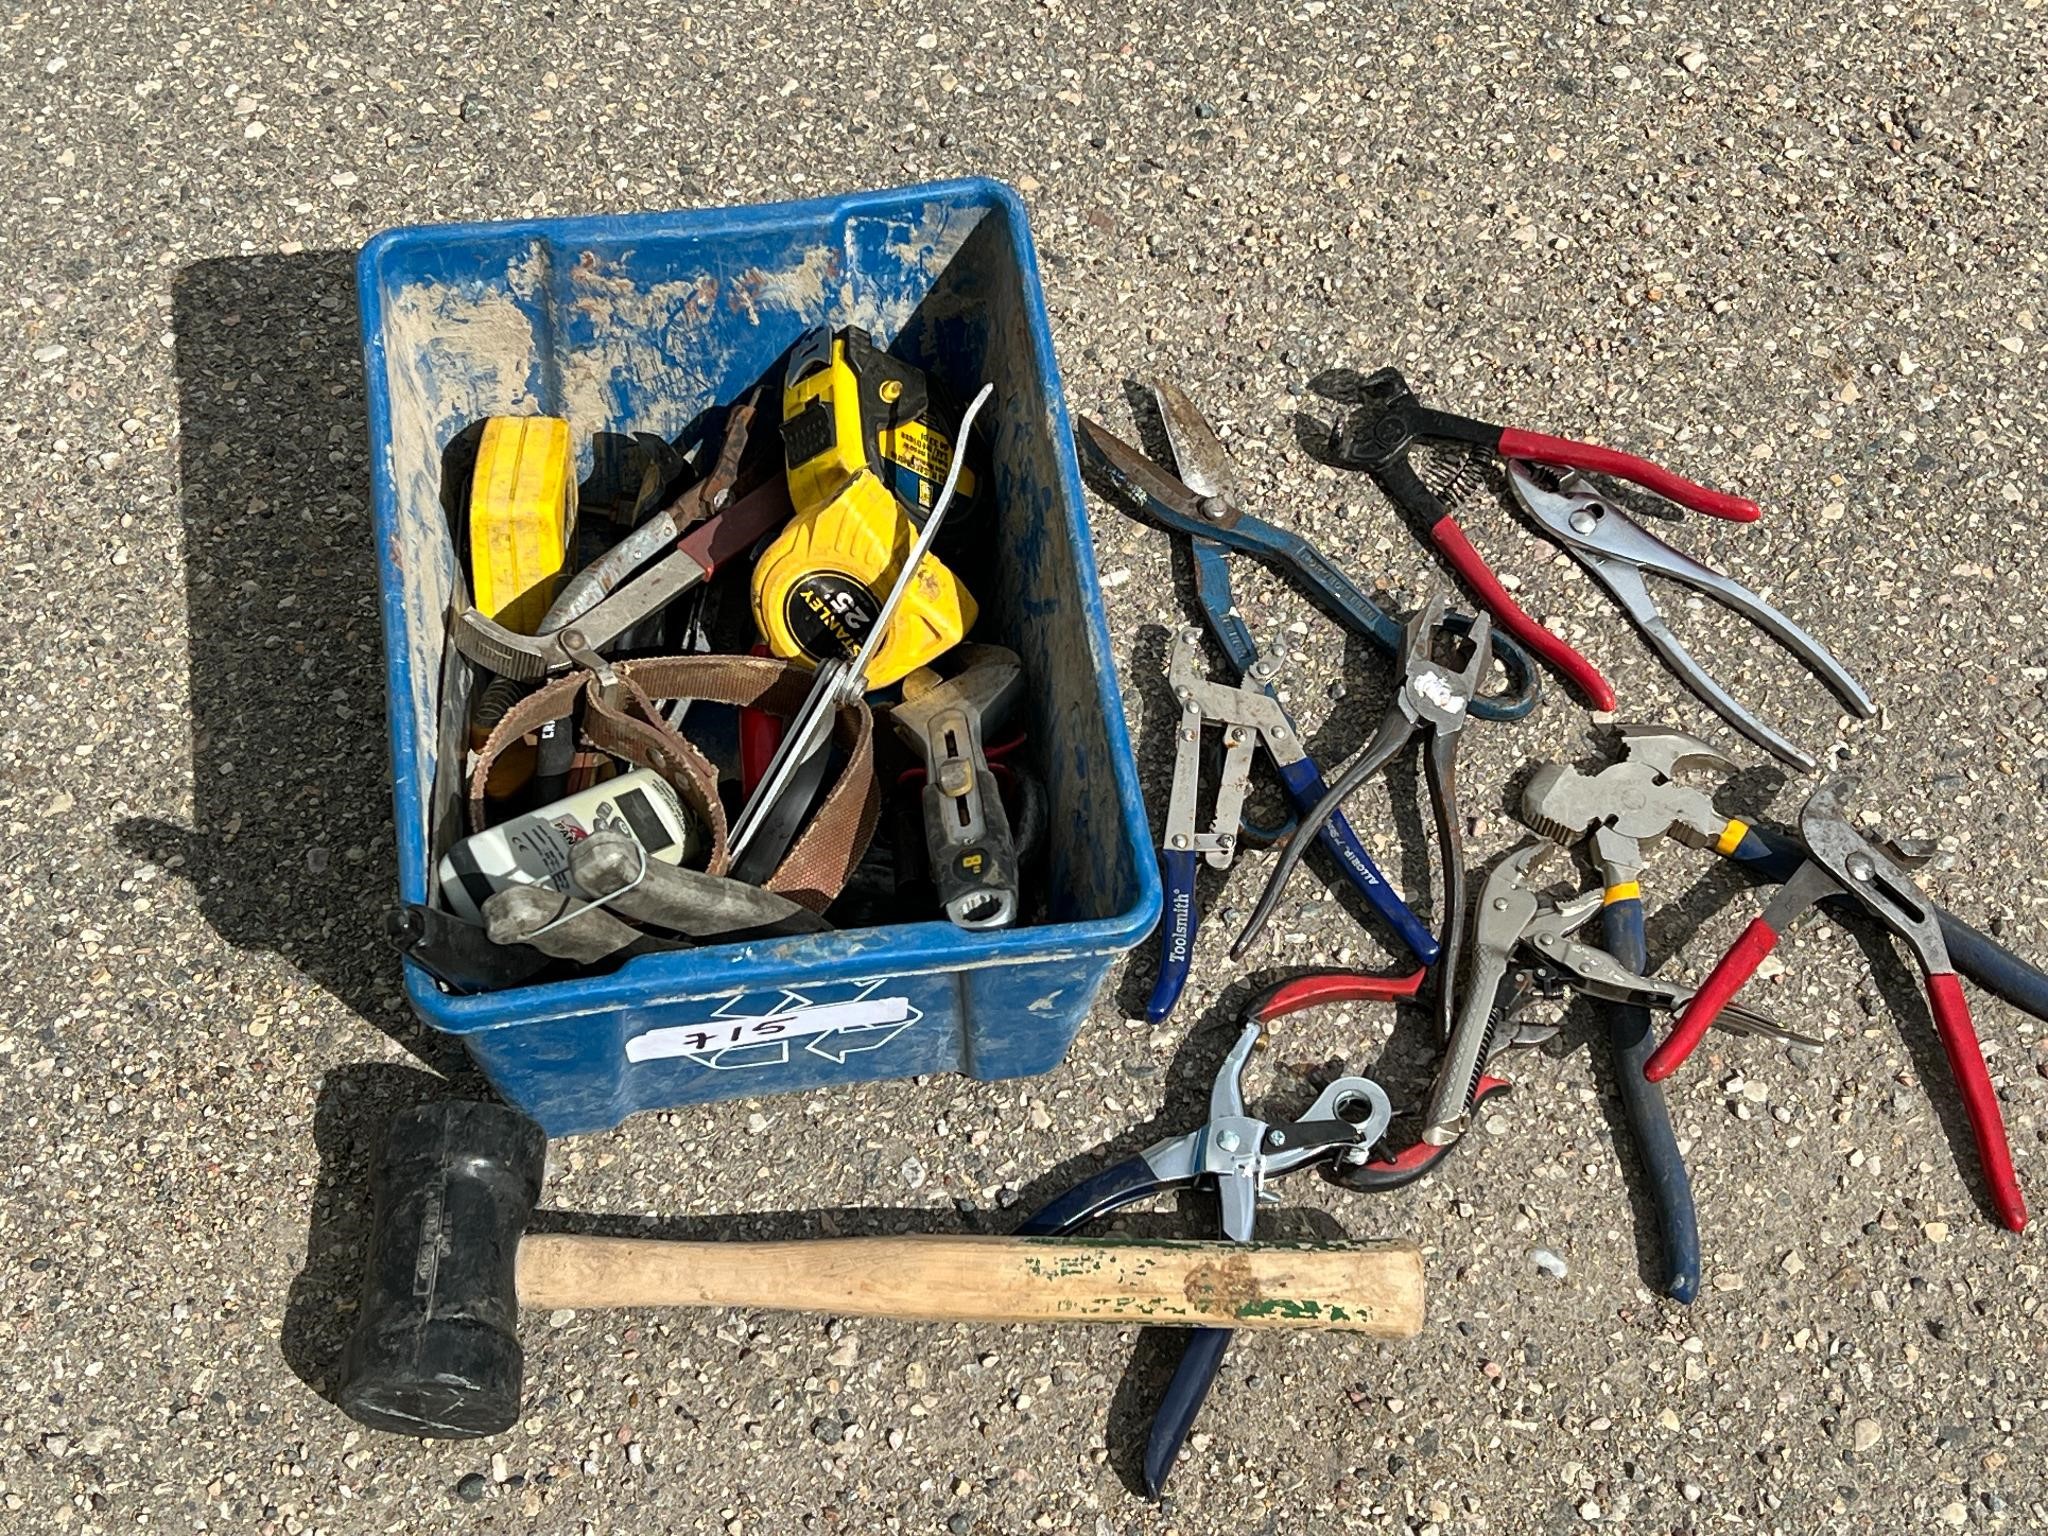 Bin of Pliers, Cutters, Tools